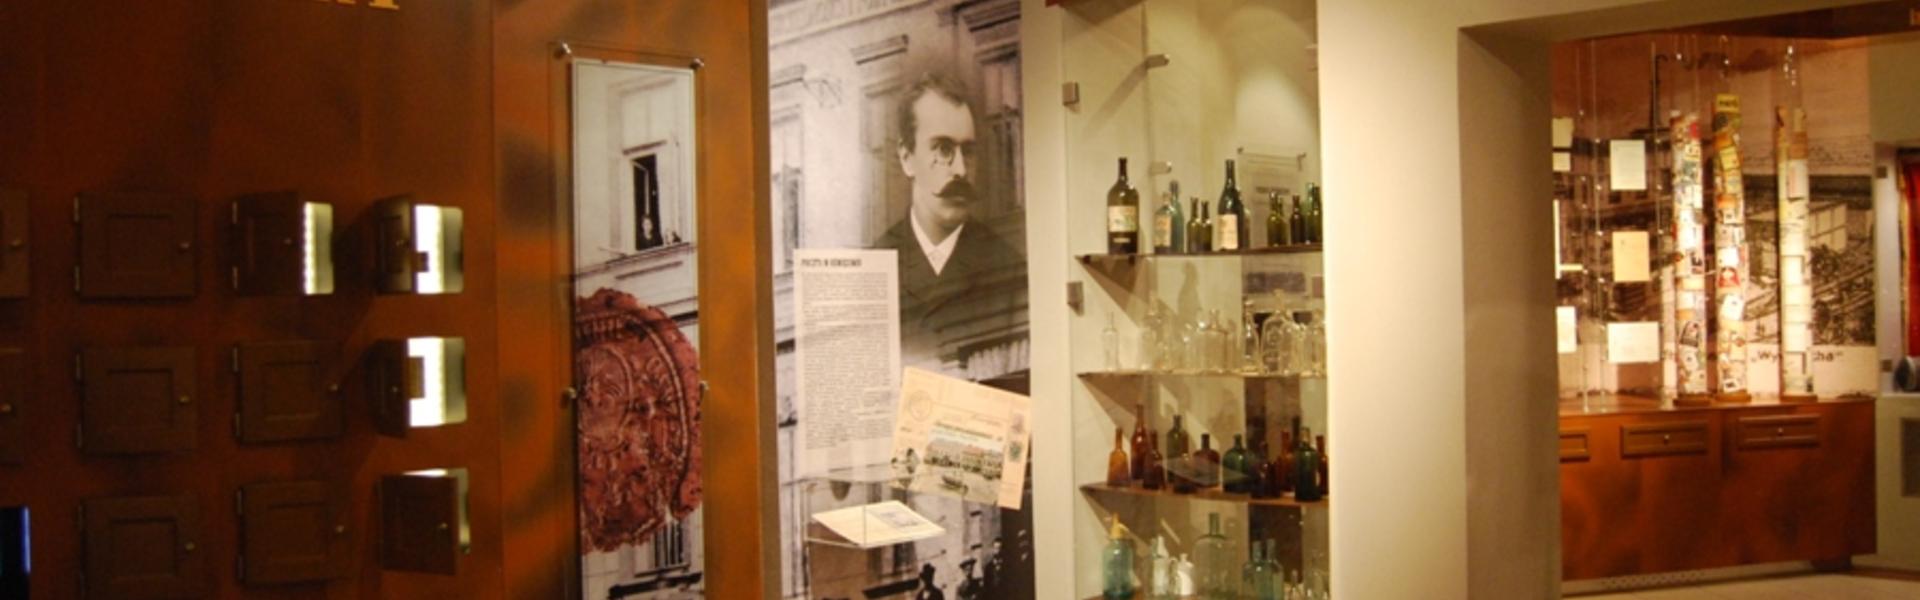 Na wystawie przedstawione są eksponaty związane z pocztą i fabryką wódki.